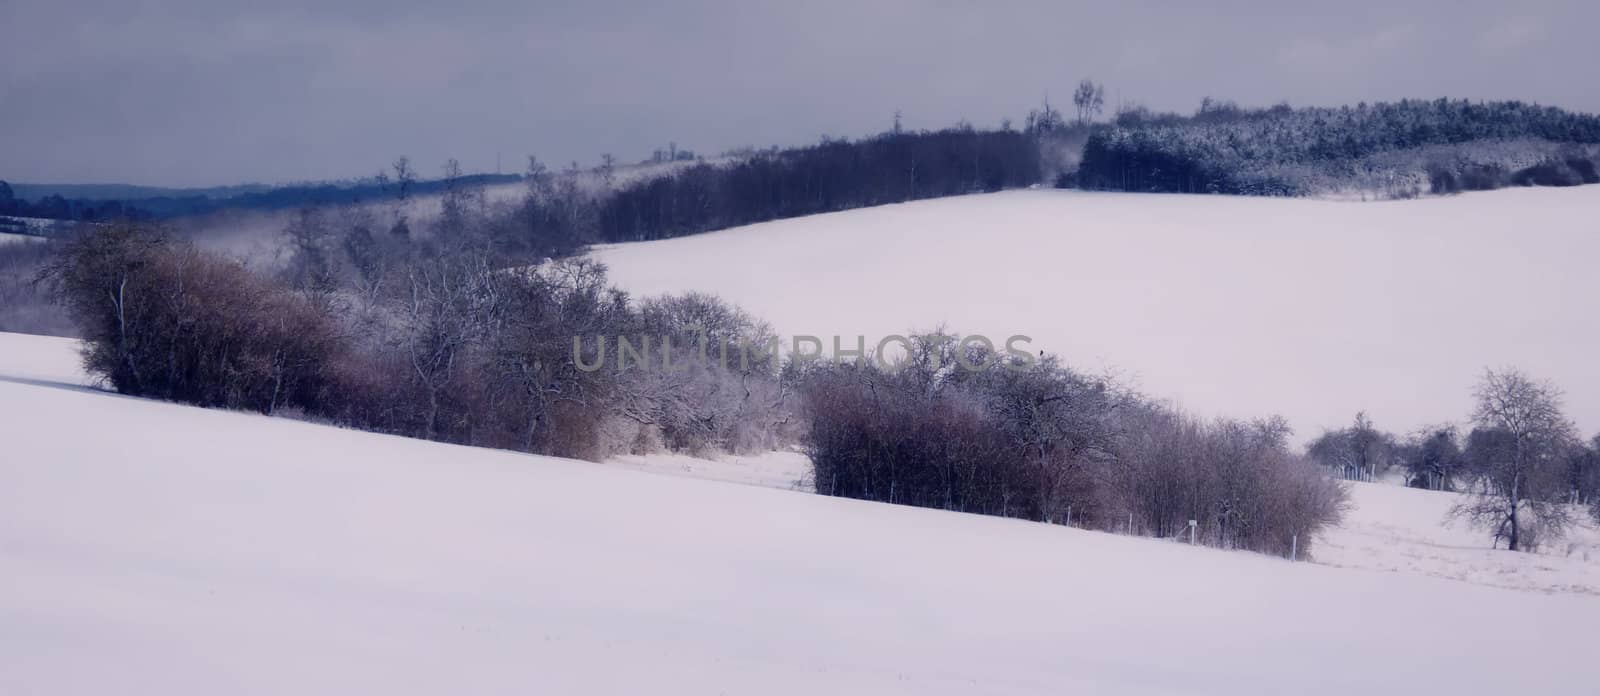 snowy landscape by njaj